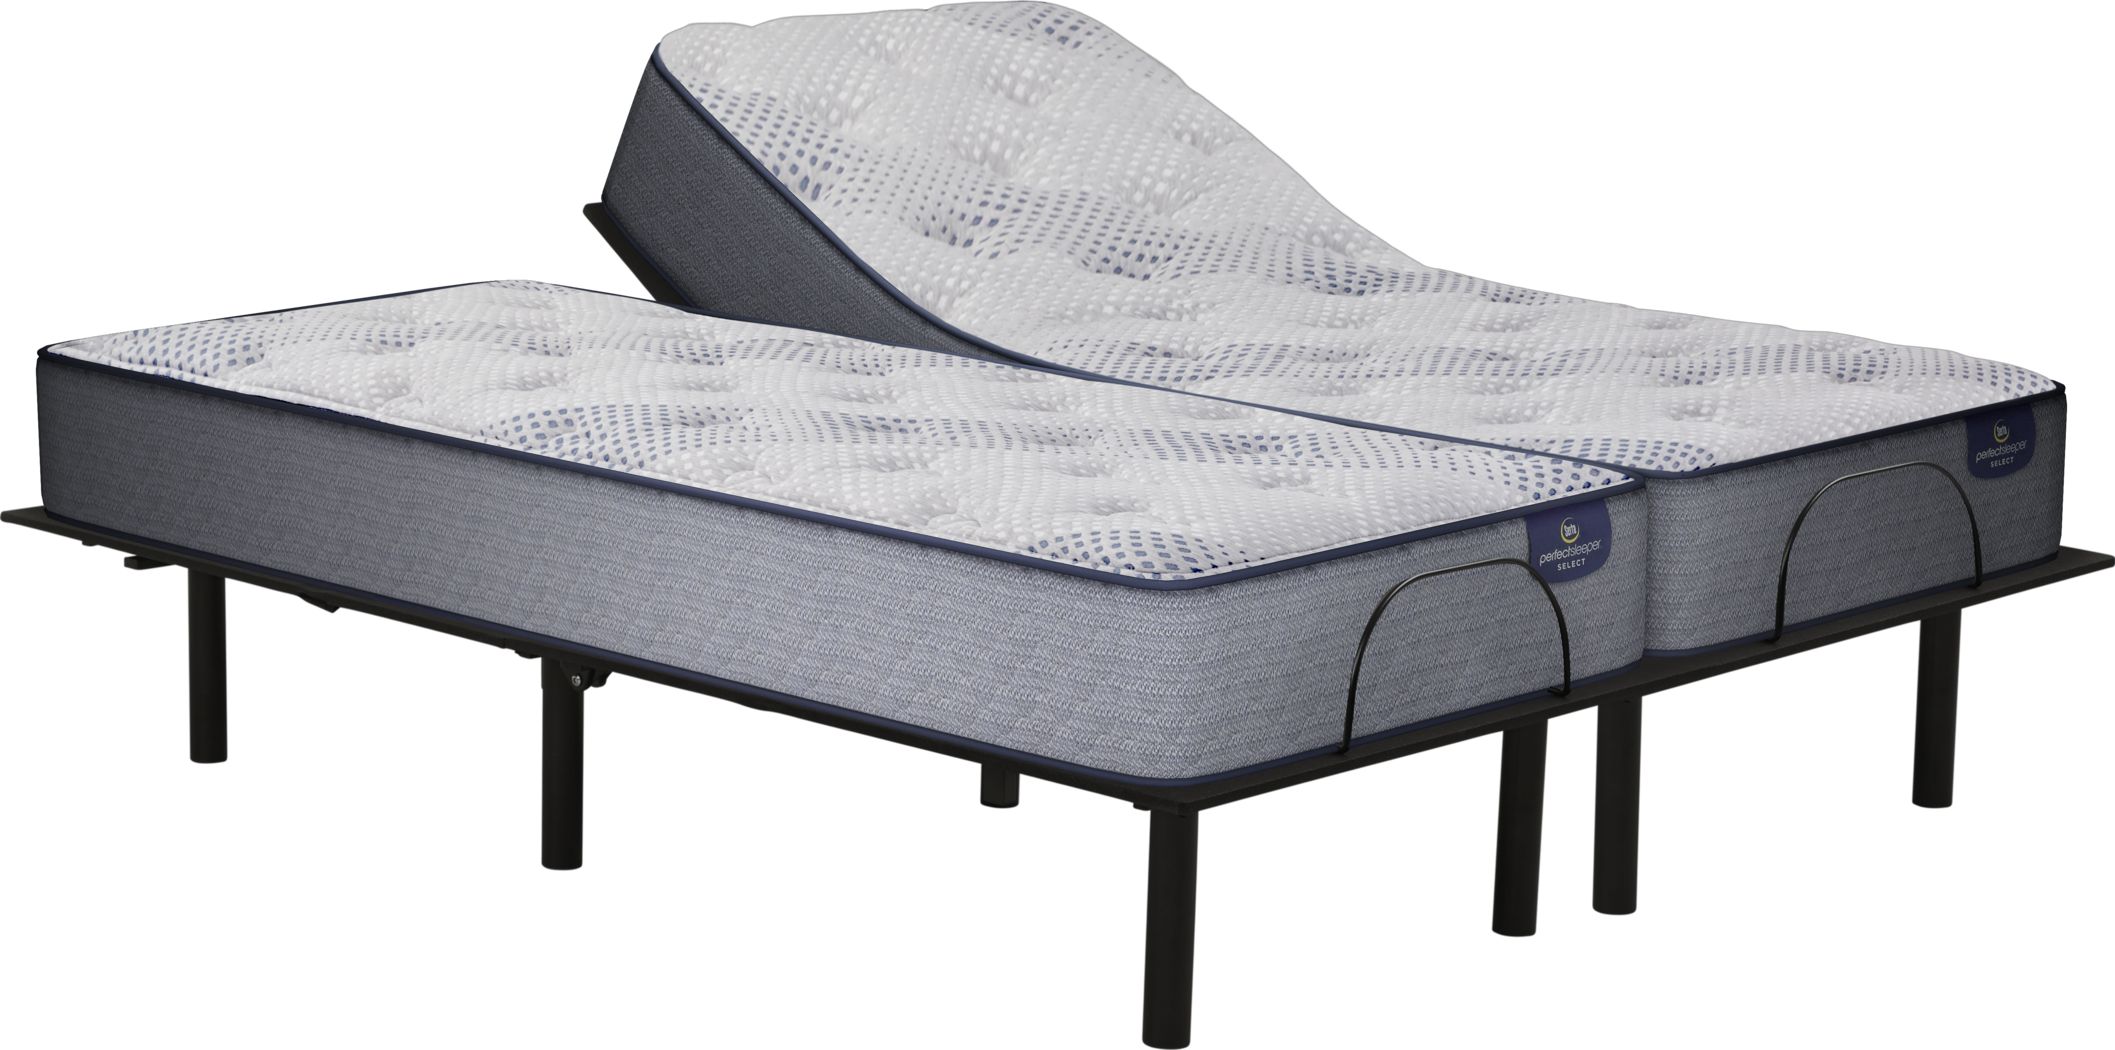 serta shoreway2 series mattress for sale